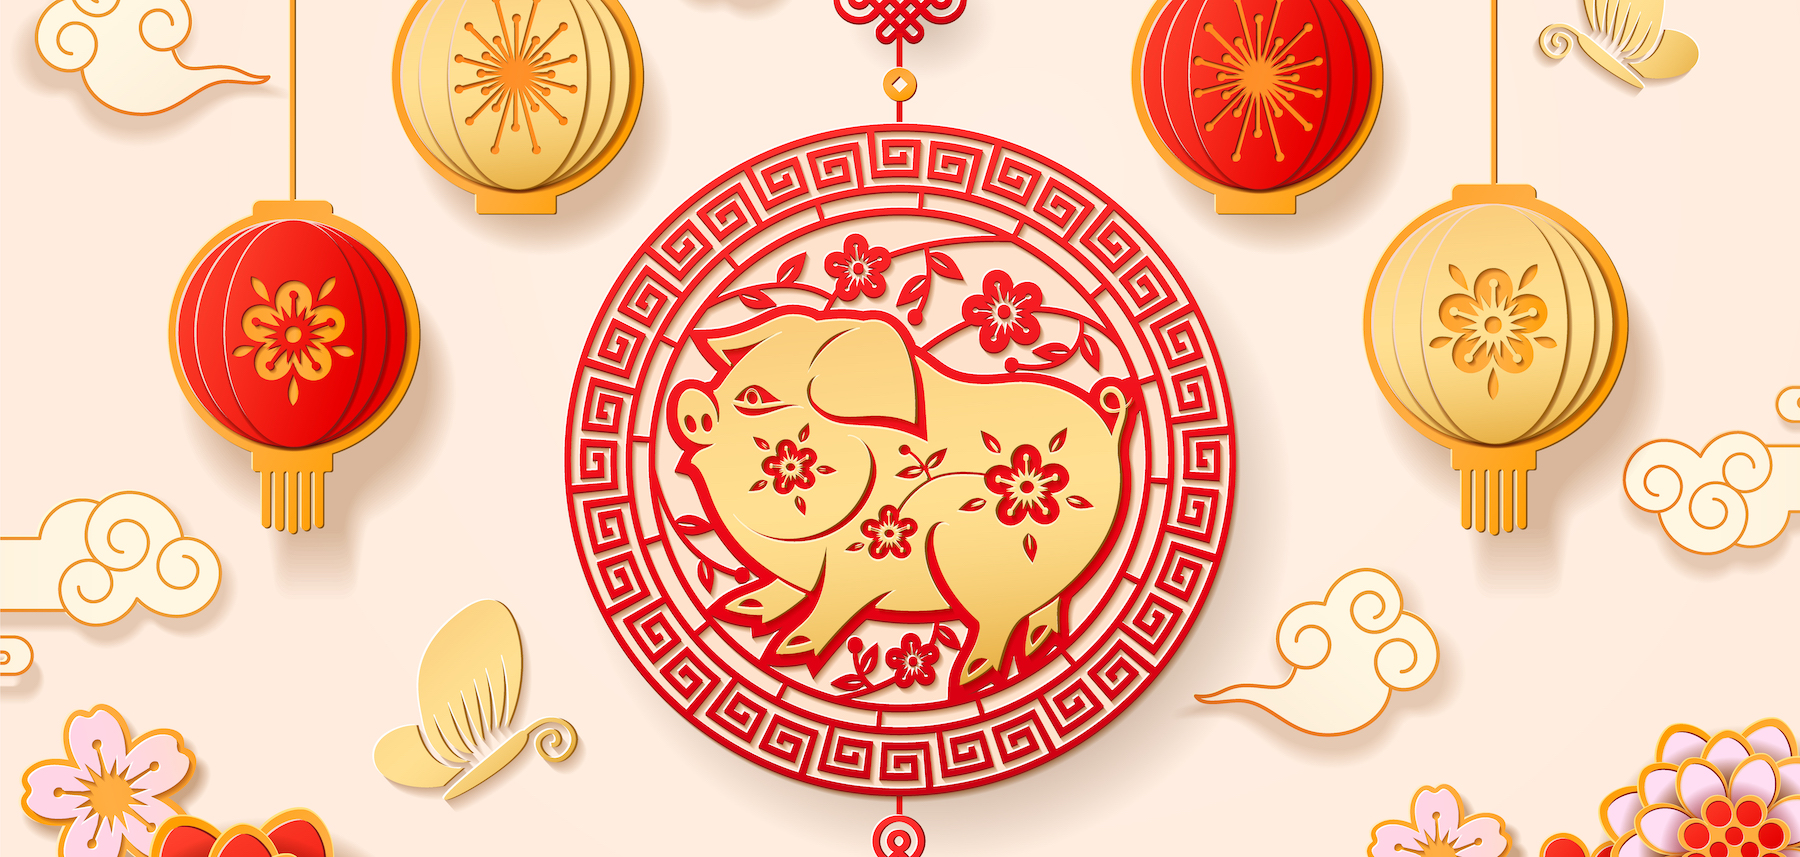 Horoskop chiński 2019 dla wszystkich znaków zodiaku Rok